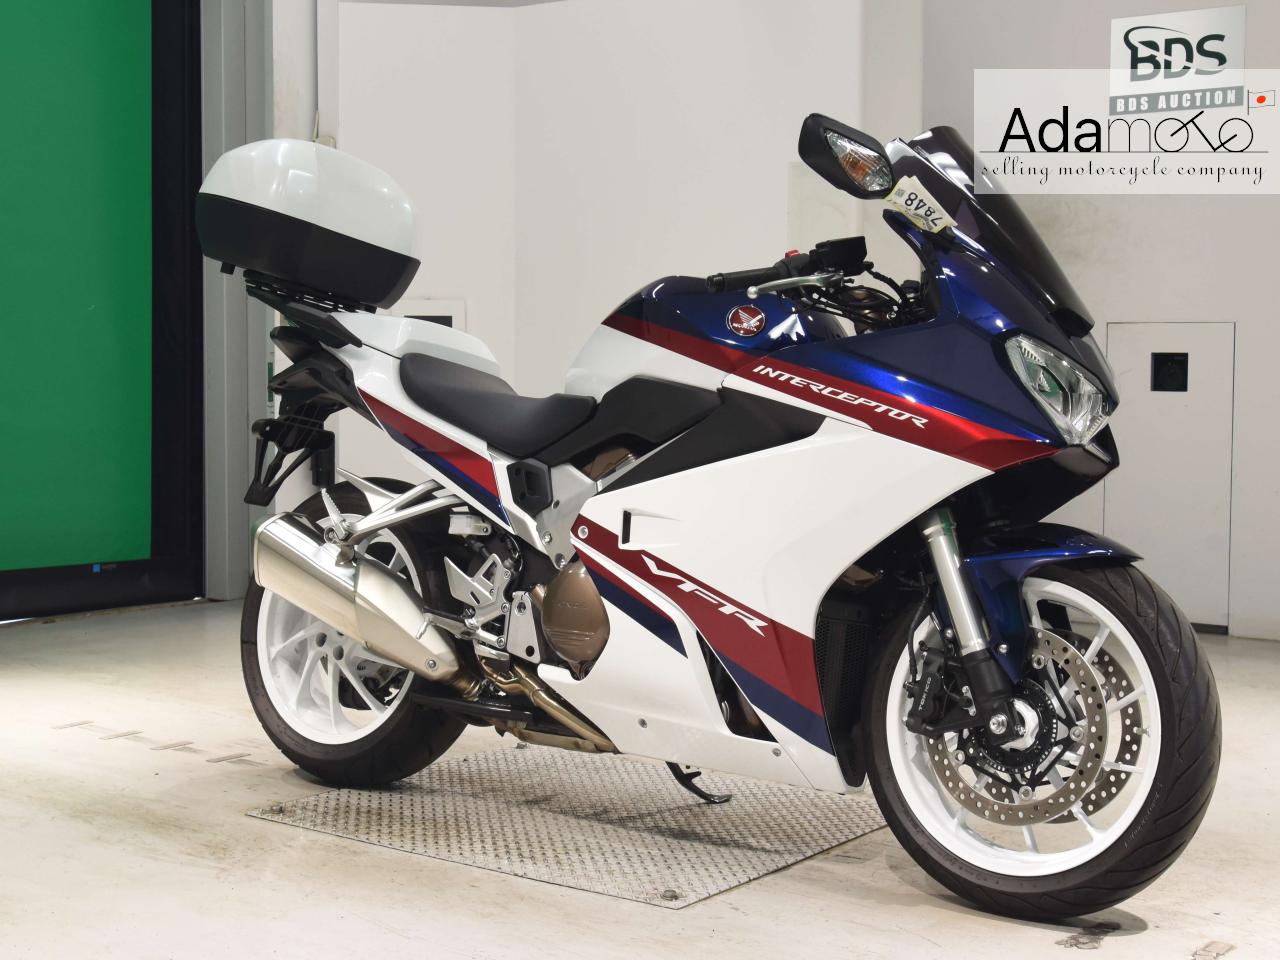 Honda VFR800F - Adamoto - Motorcycles from Japan